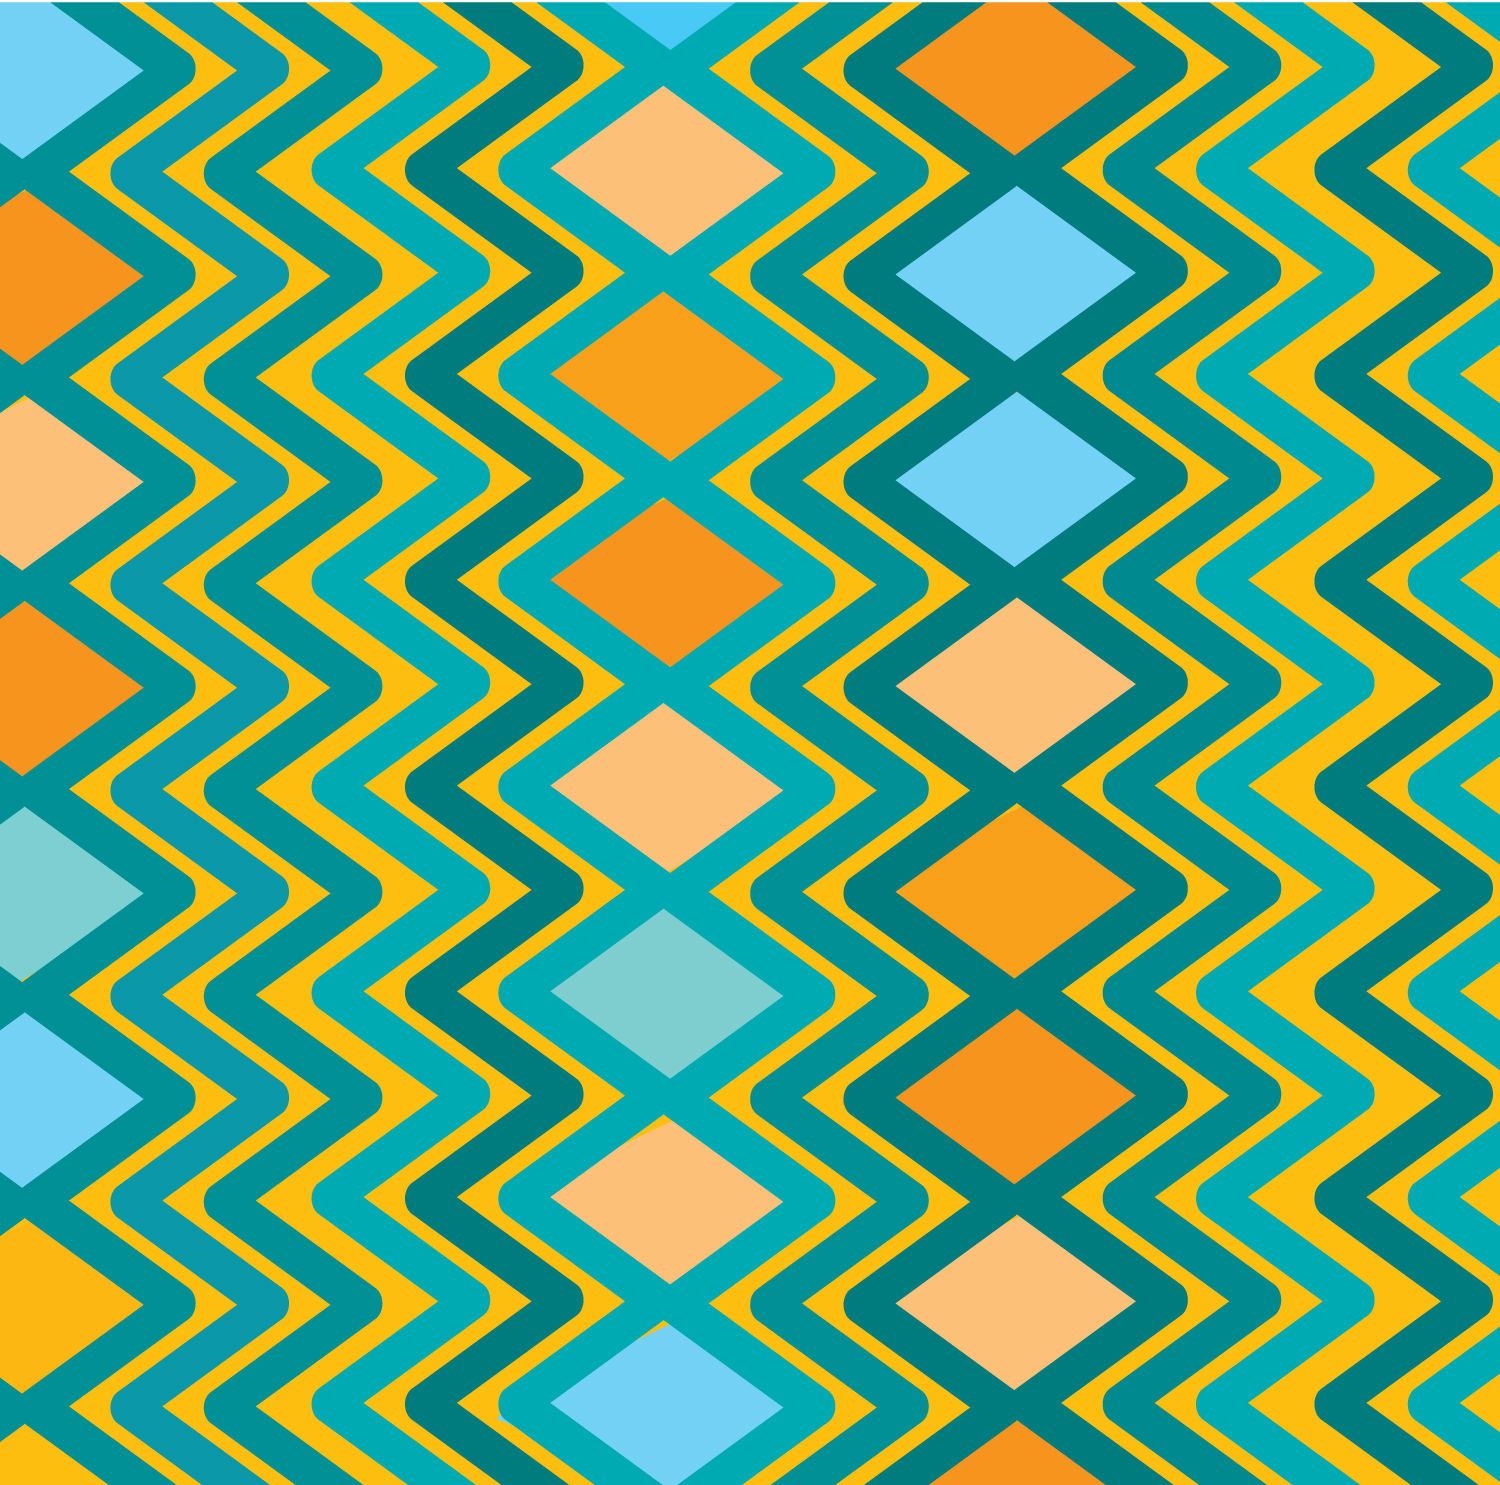 Rhombus zig zag pattern